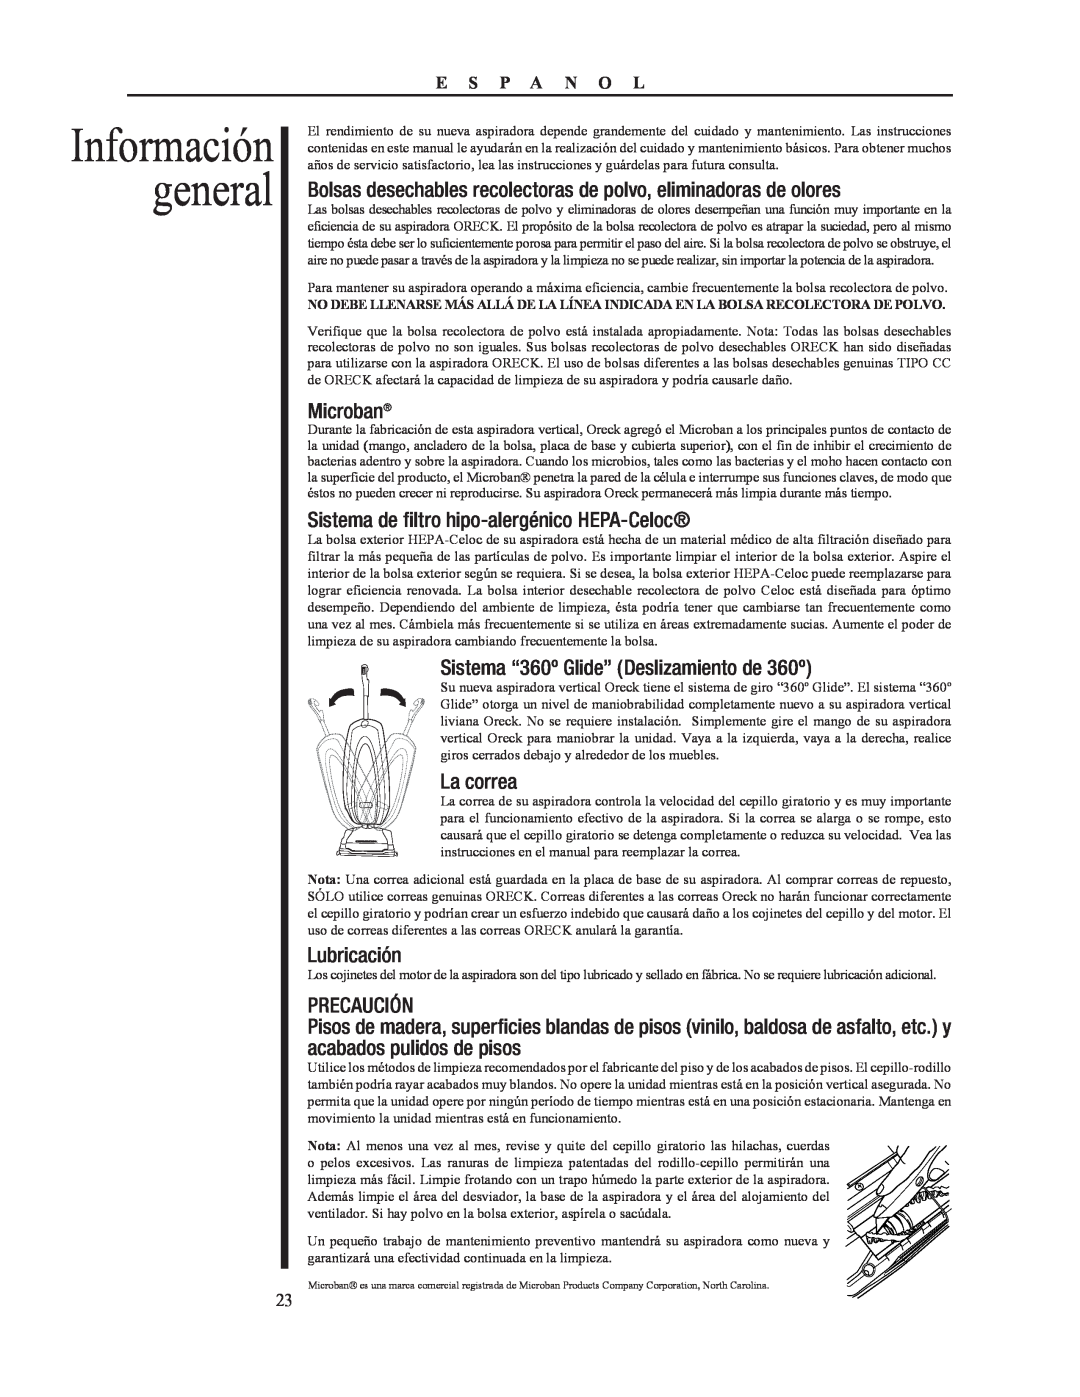 Oreck 79052-01REVA Información general, Sistema de filtro hipo-alergénico HEPA-Celoc, La correa, Lubricación, Precaución 